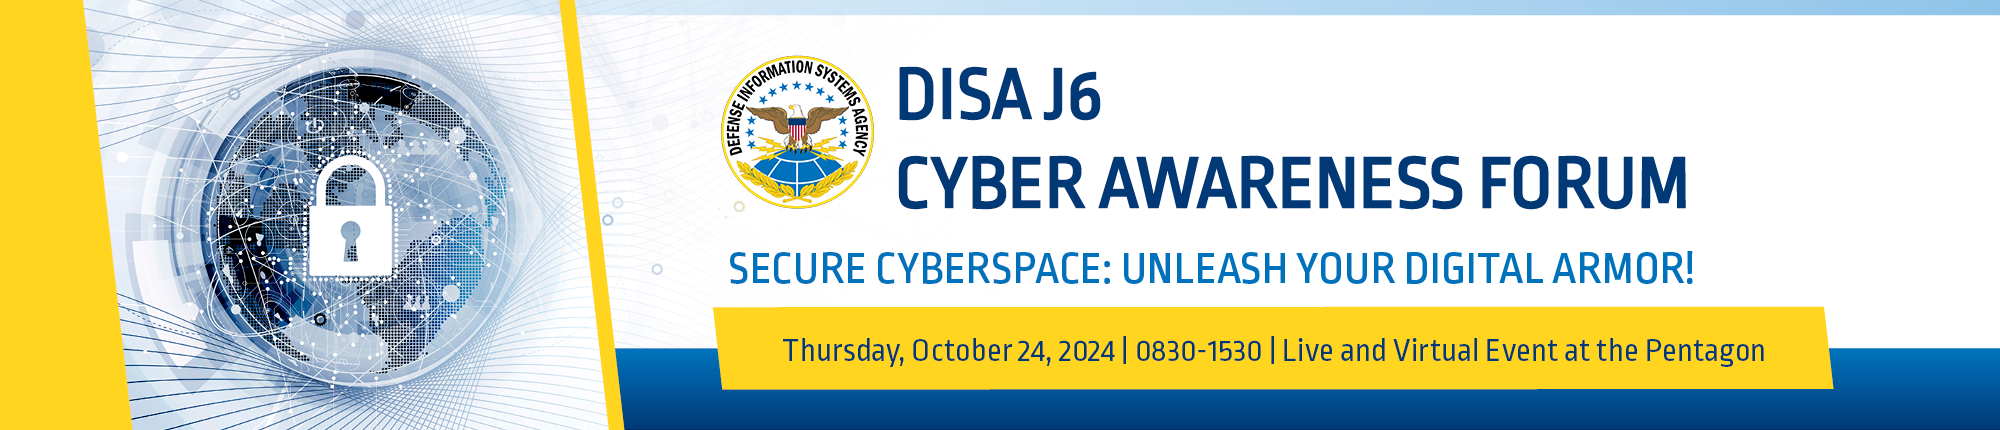 DISA J6 Cyber Awareness Forum